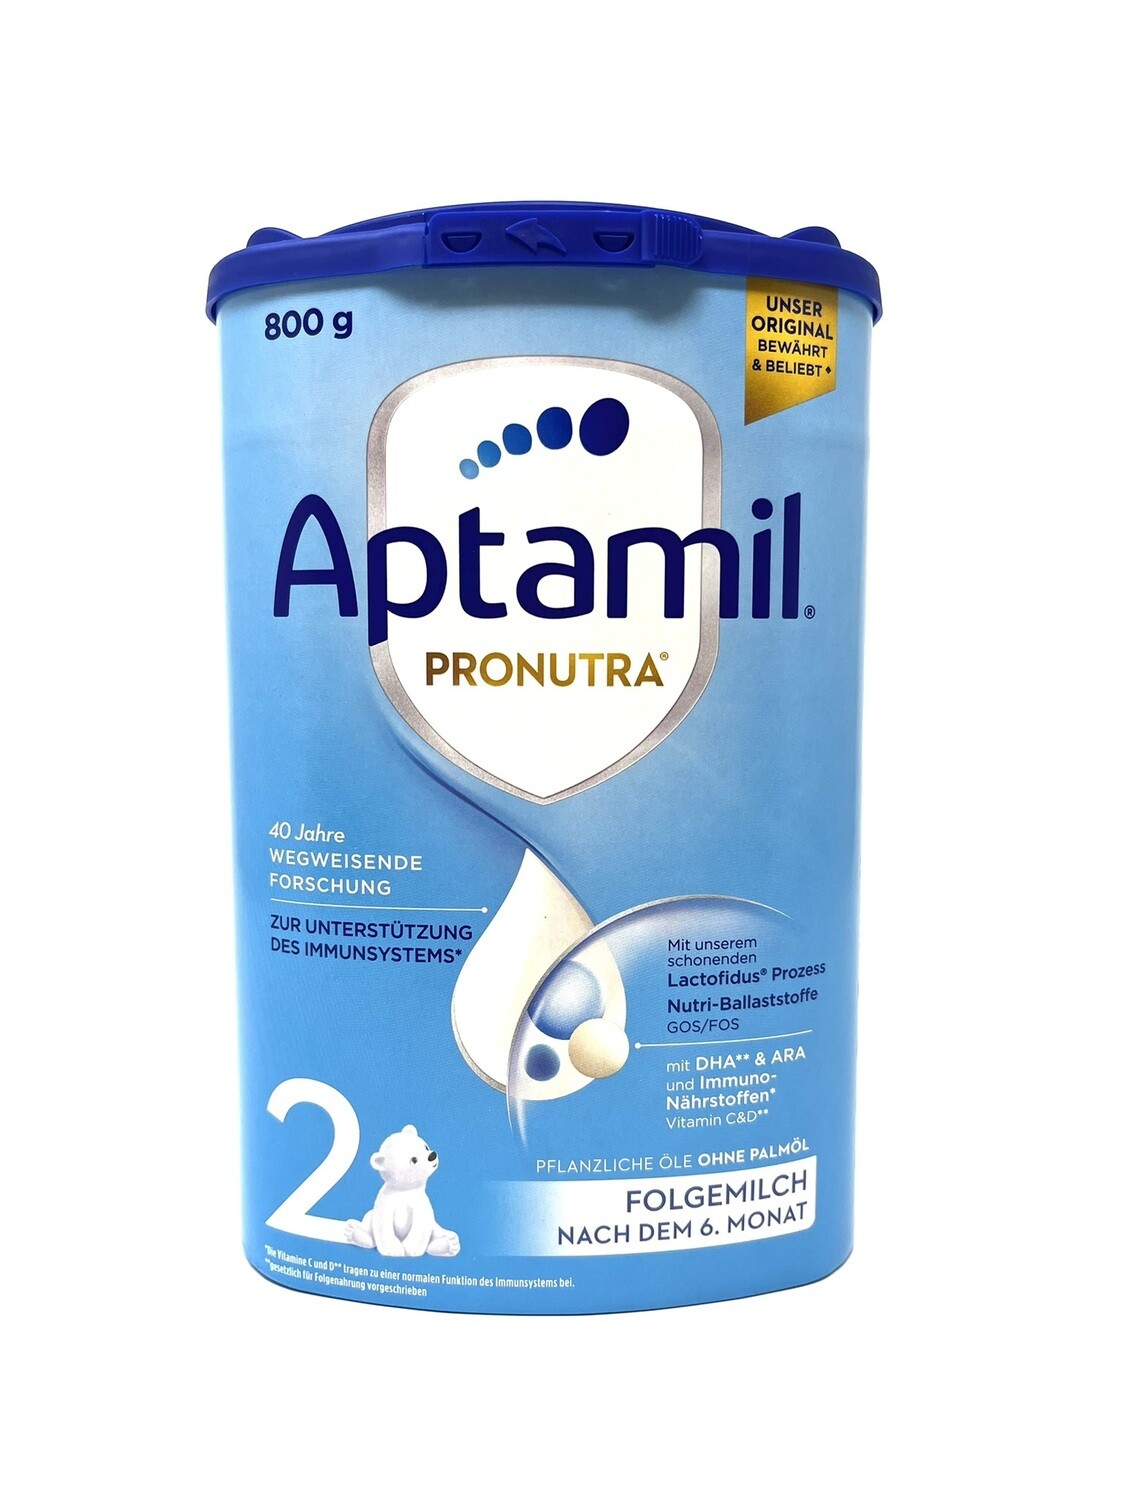 Aptamil Pronutra 2 Folgemilch
-ab dem 6. Monat -
800g